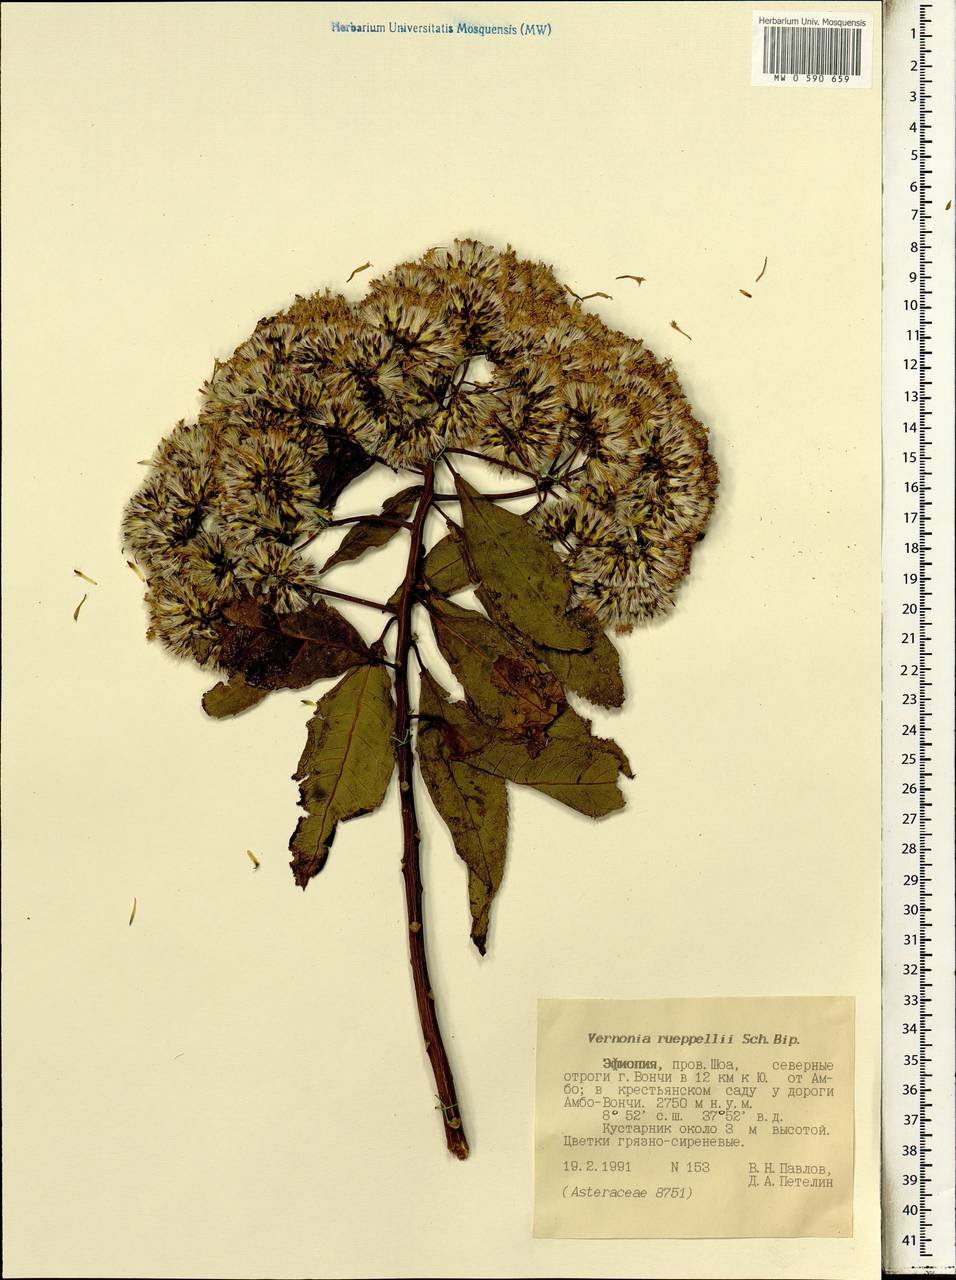 Gymnanthemum rueppellii (Sch. Bip. ex Walp.) H. Rob., Африка (AFR) (Эфиопия)